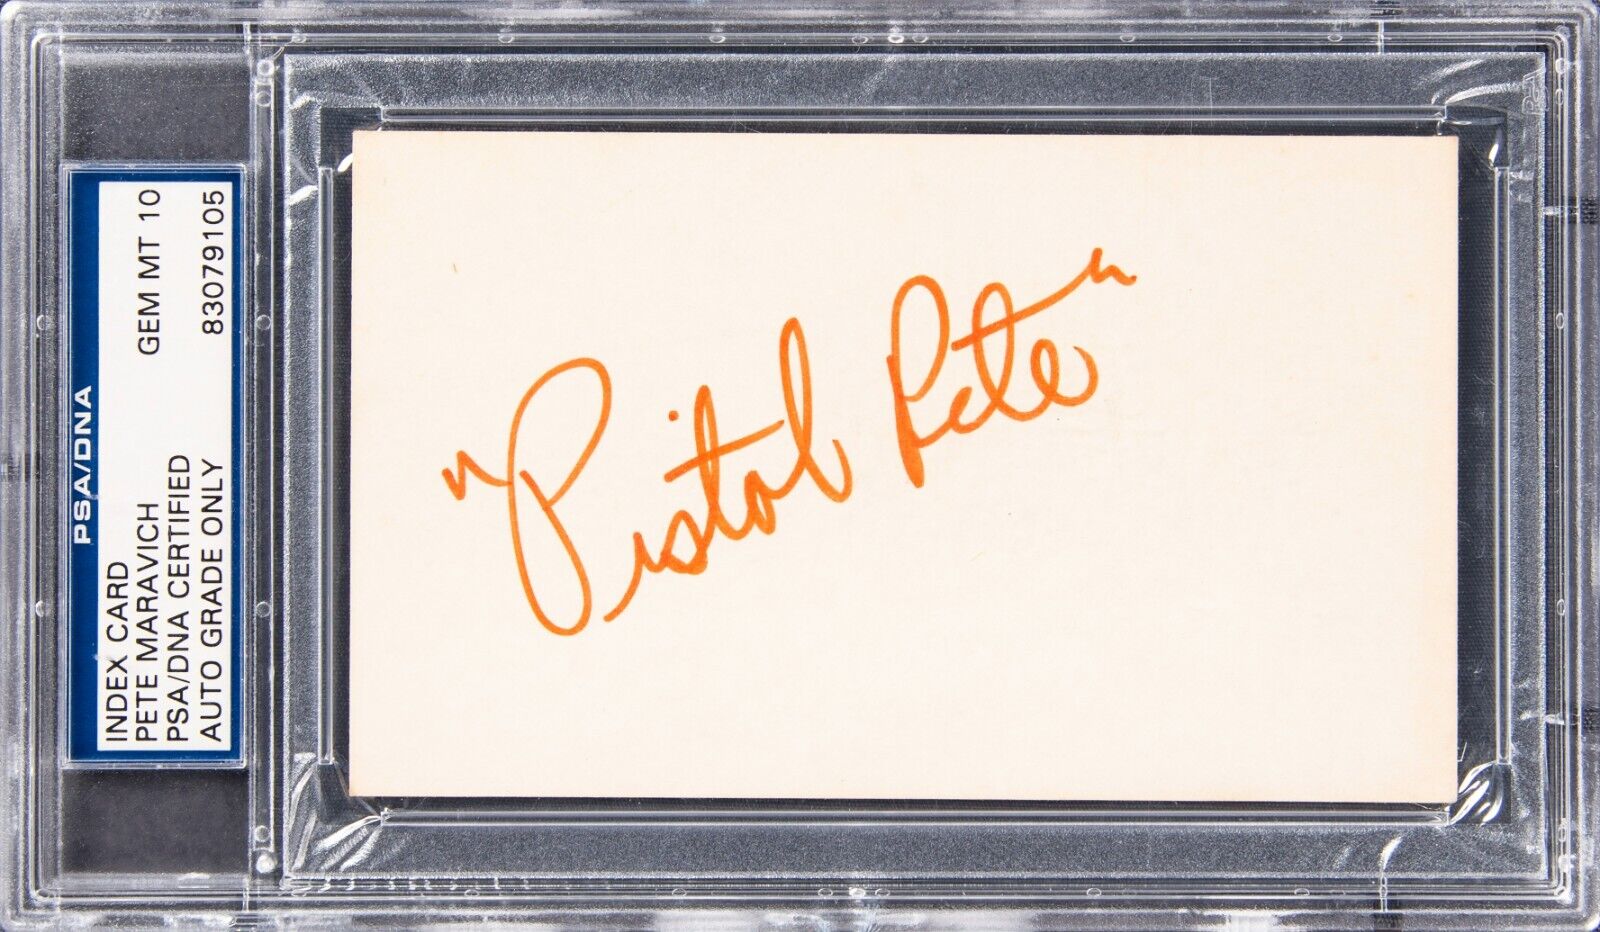 Pete Maravich "Pistol Pete" Signed Index Card  PSA/DNA GEM MT 10 Auto